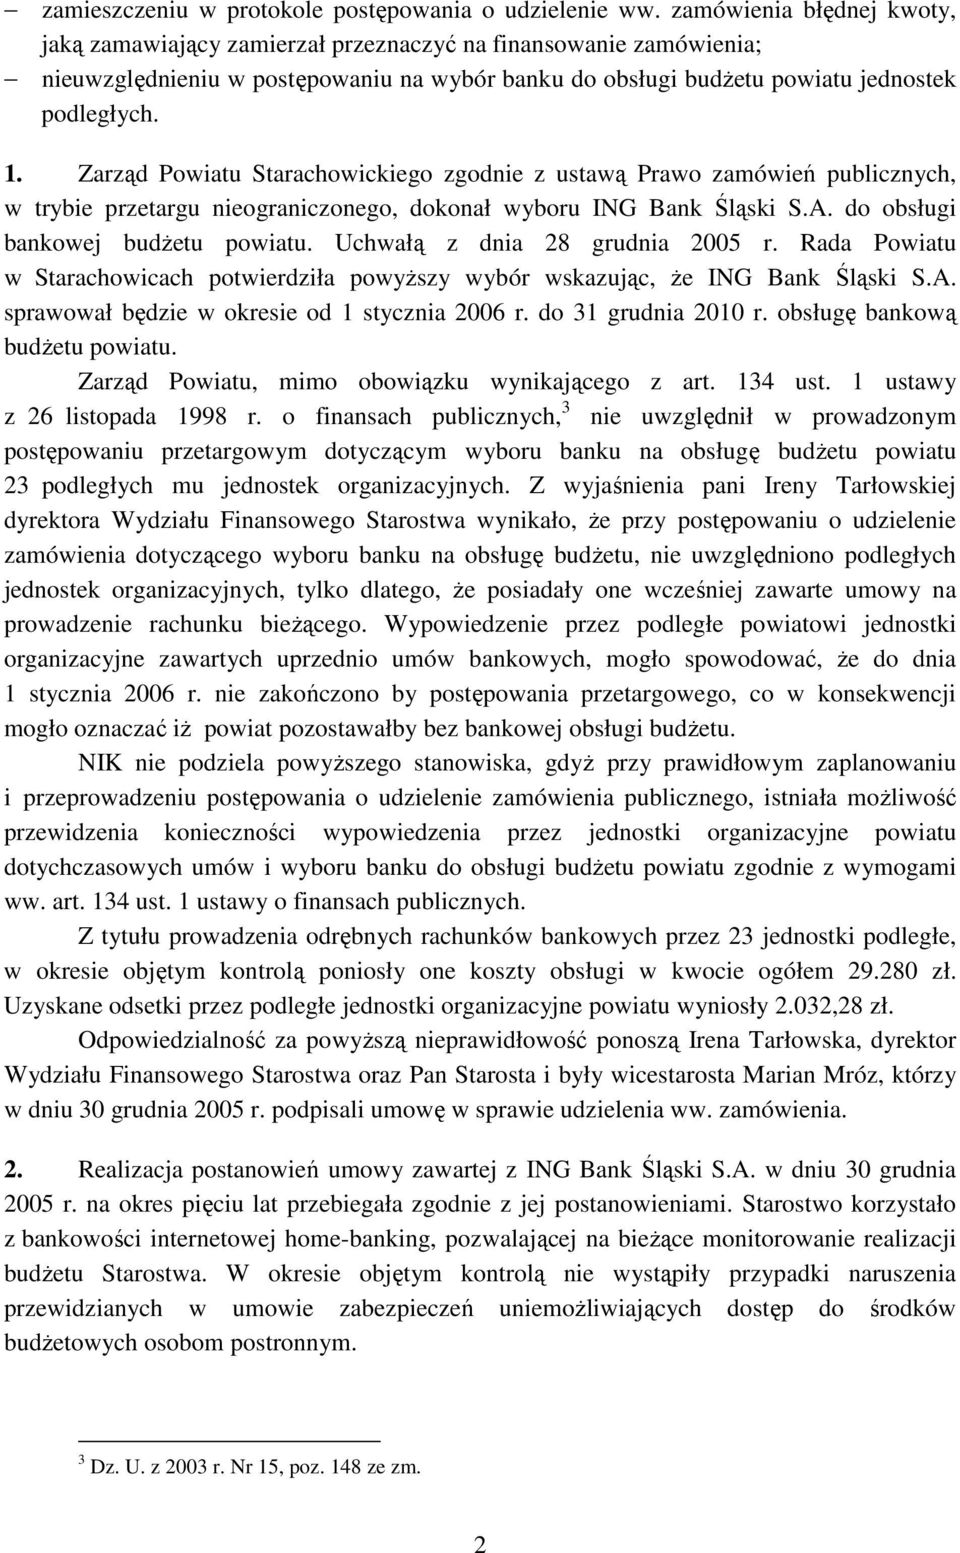 Zarząd Powiatu Starachowickiego zgodnie z ustawą Prawo zamówień publicznych, w trybie przetargu nieograniczonego, dokonał wyboru ING Bank Śląski S.A. do obsługi bankowej budŝetu powiatu.